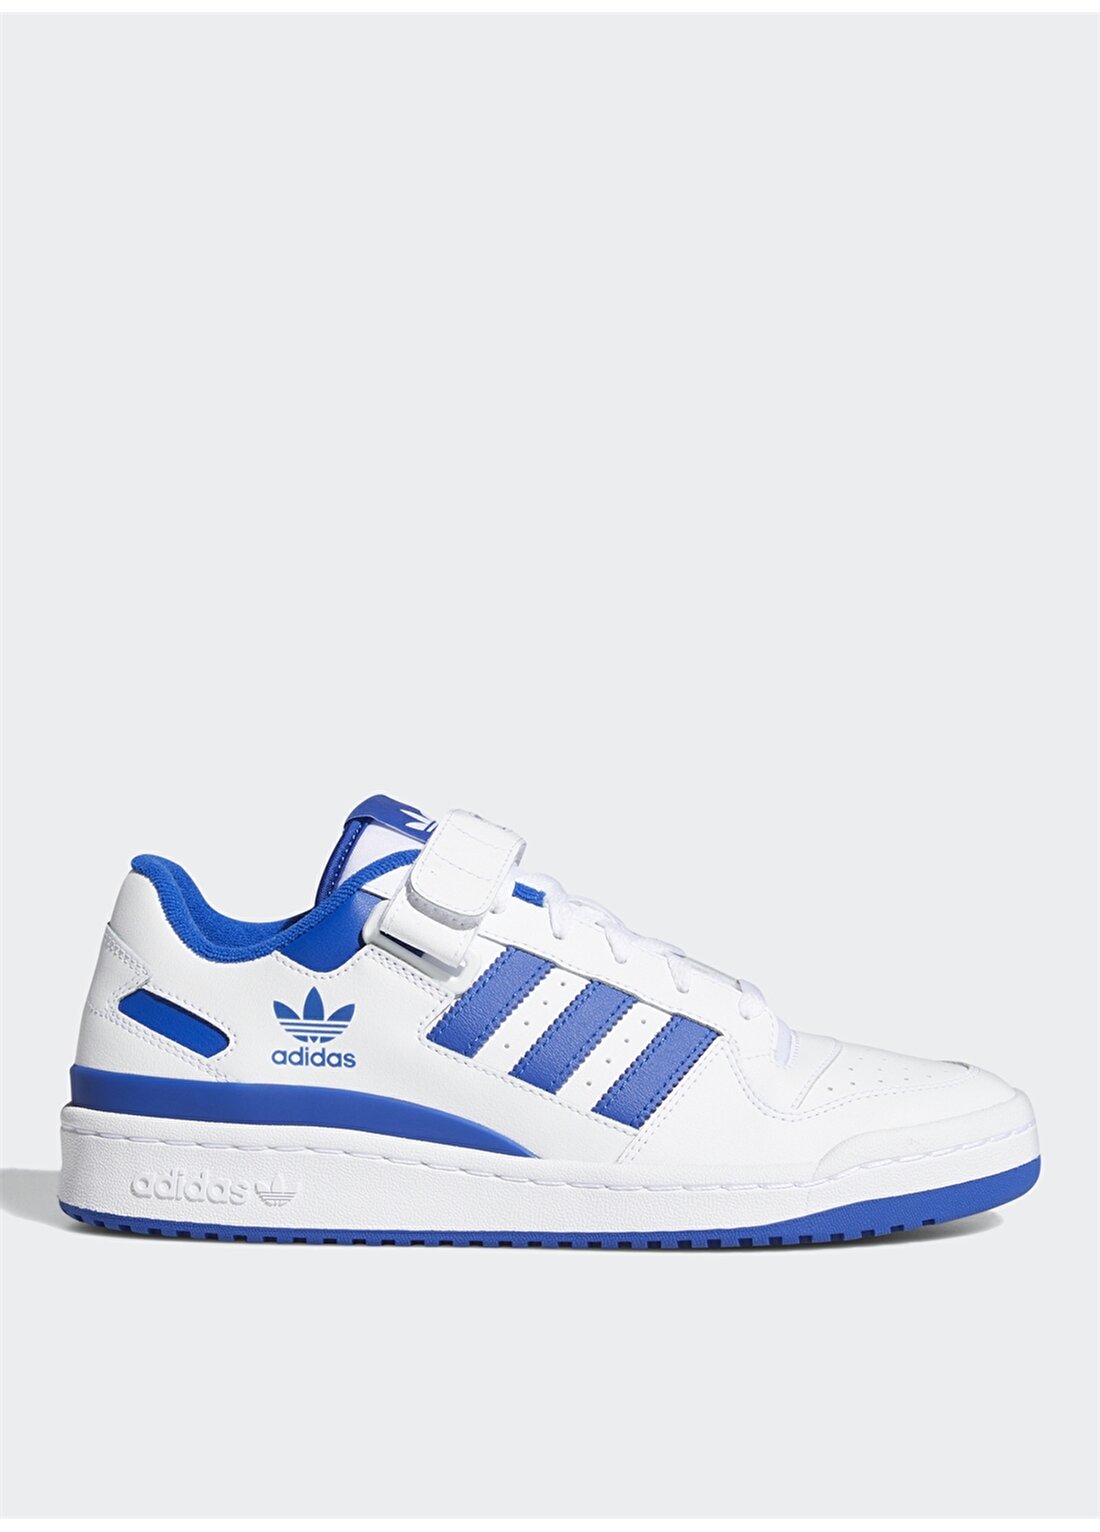 Adidas Fy7756 Forum Low Beyaz - Mavi Erkek Lifestyle Ayakkabı